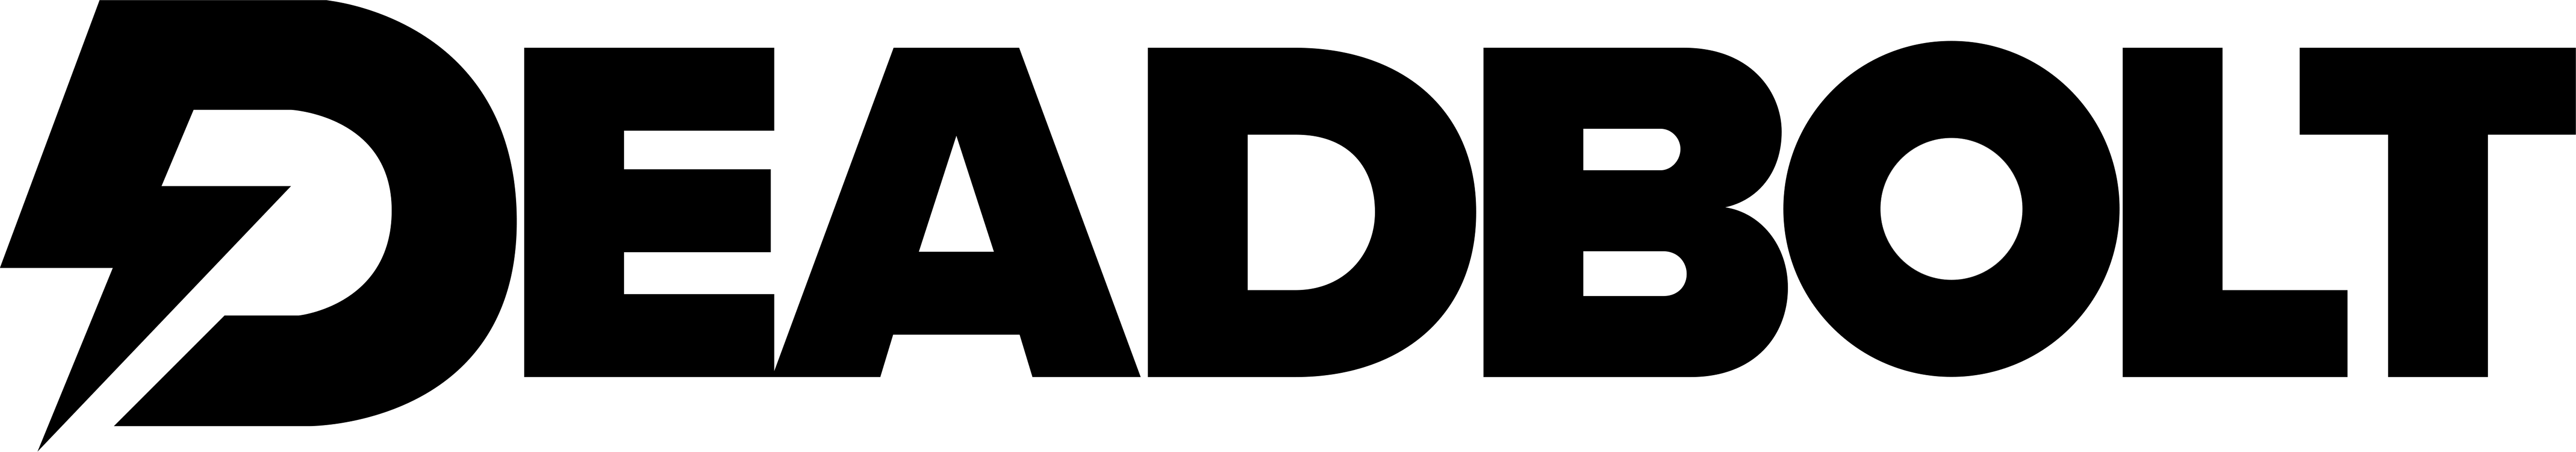 Deadbolt Black Logo